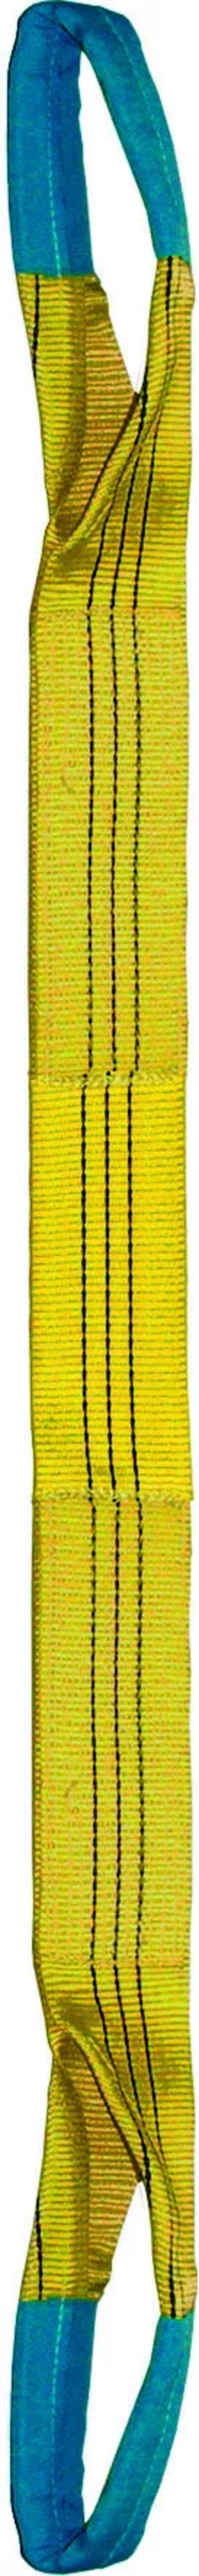 Élingue sangle double 90 mm cmu 3 t jaune boucles repliées lg. 2,50 m LEVAC - 4822C25